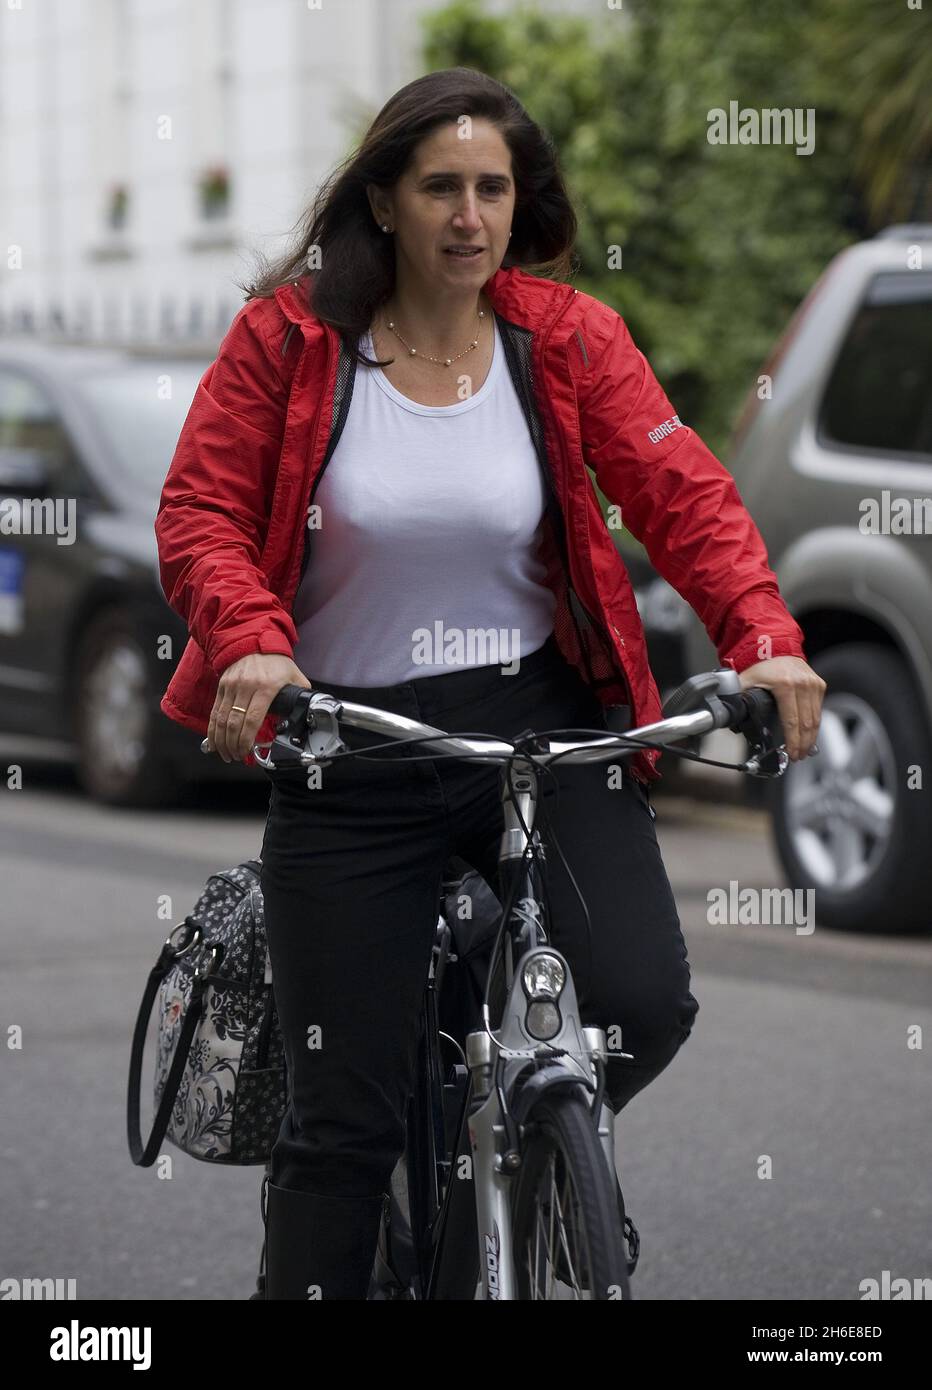 Marina Johnson, Ehefrau von Boris Johnson, dem Bürgermeister von London, kommt heute Morgen mit dem Fahrrad in einem Londoner Wahllokal an, um abzustimmen. Stockfoto